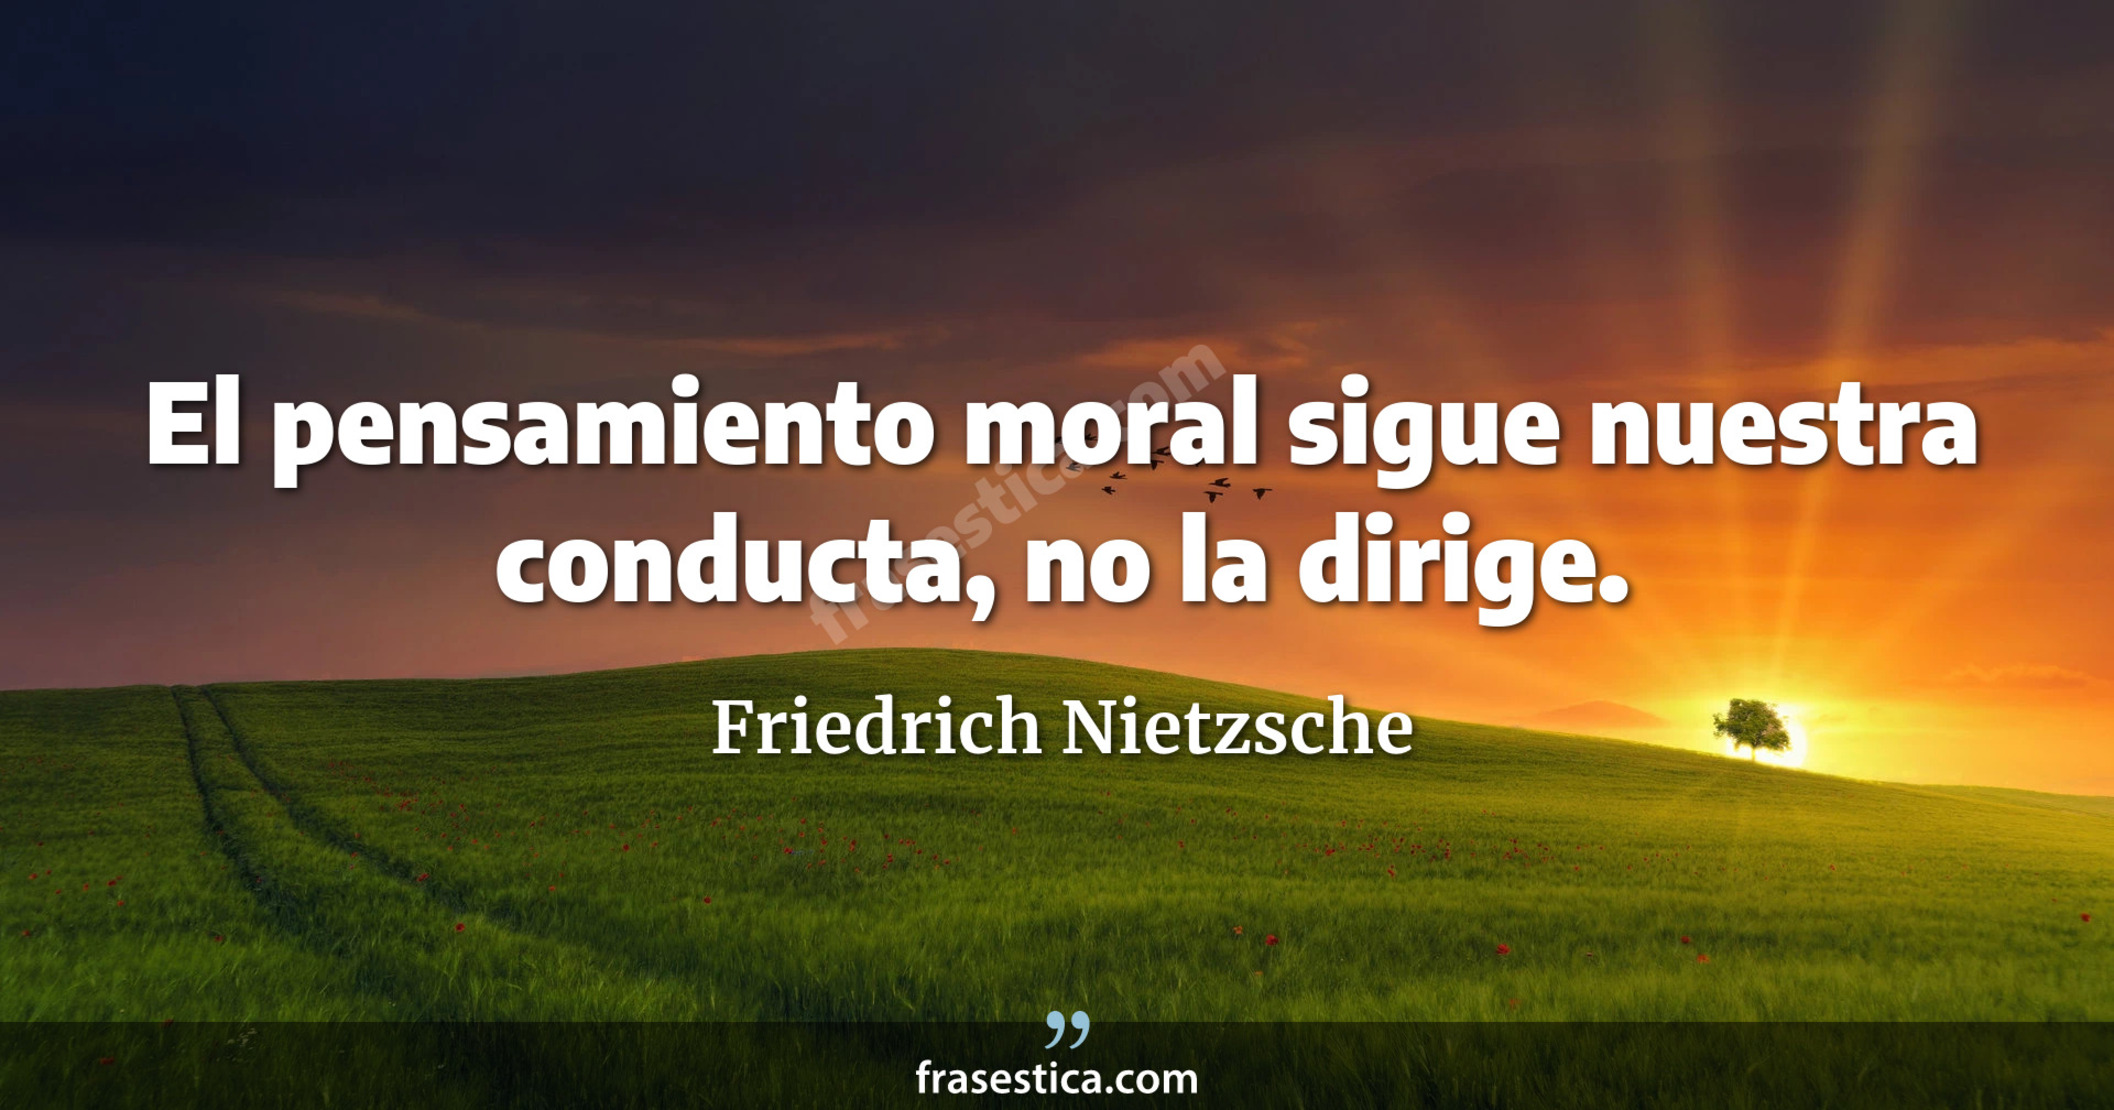 El pensamiento moral sigue nuestra conducta, no la dirige. - Friedrich Nietzsche